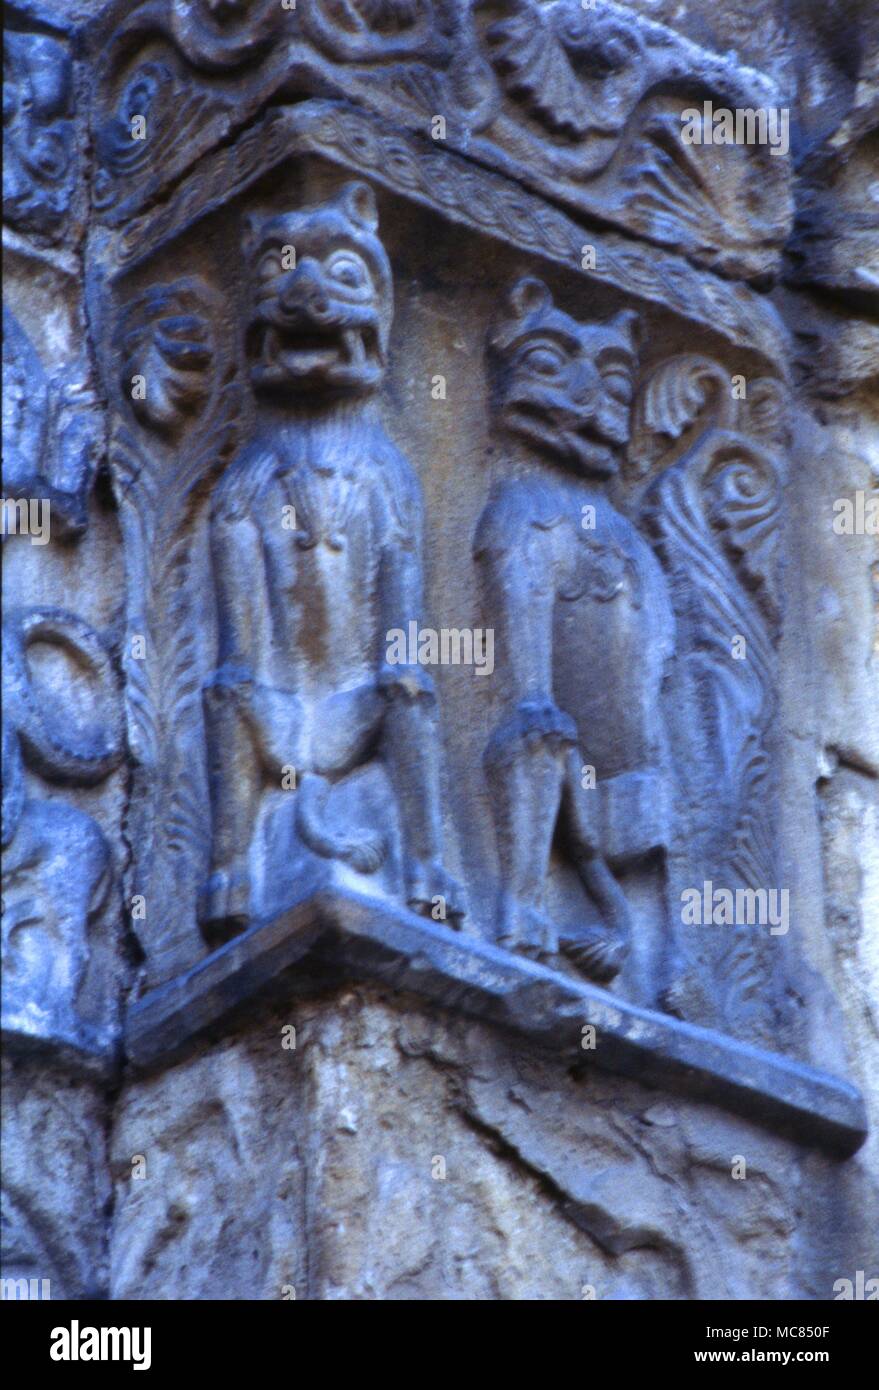 Feline - wie Dämonen auf der Fassade von St. Michele's Kirche in Pavia, Italien. Frühen vierzehnten Jahrhundert. Stockfoto